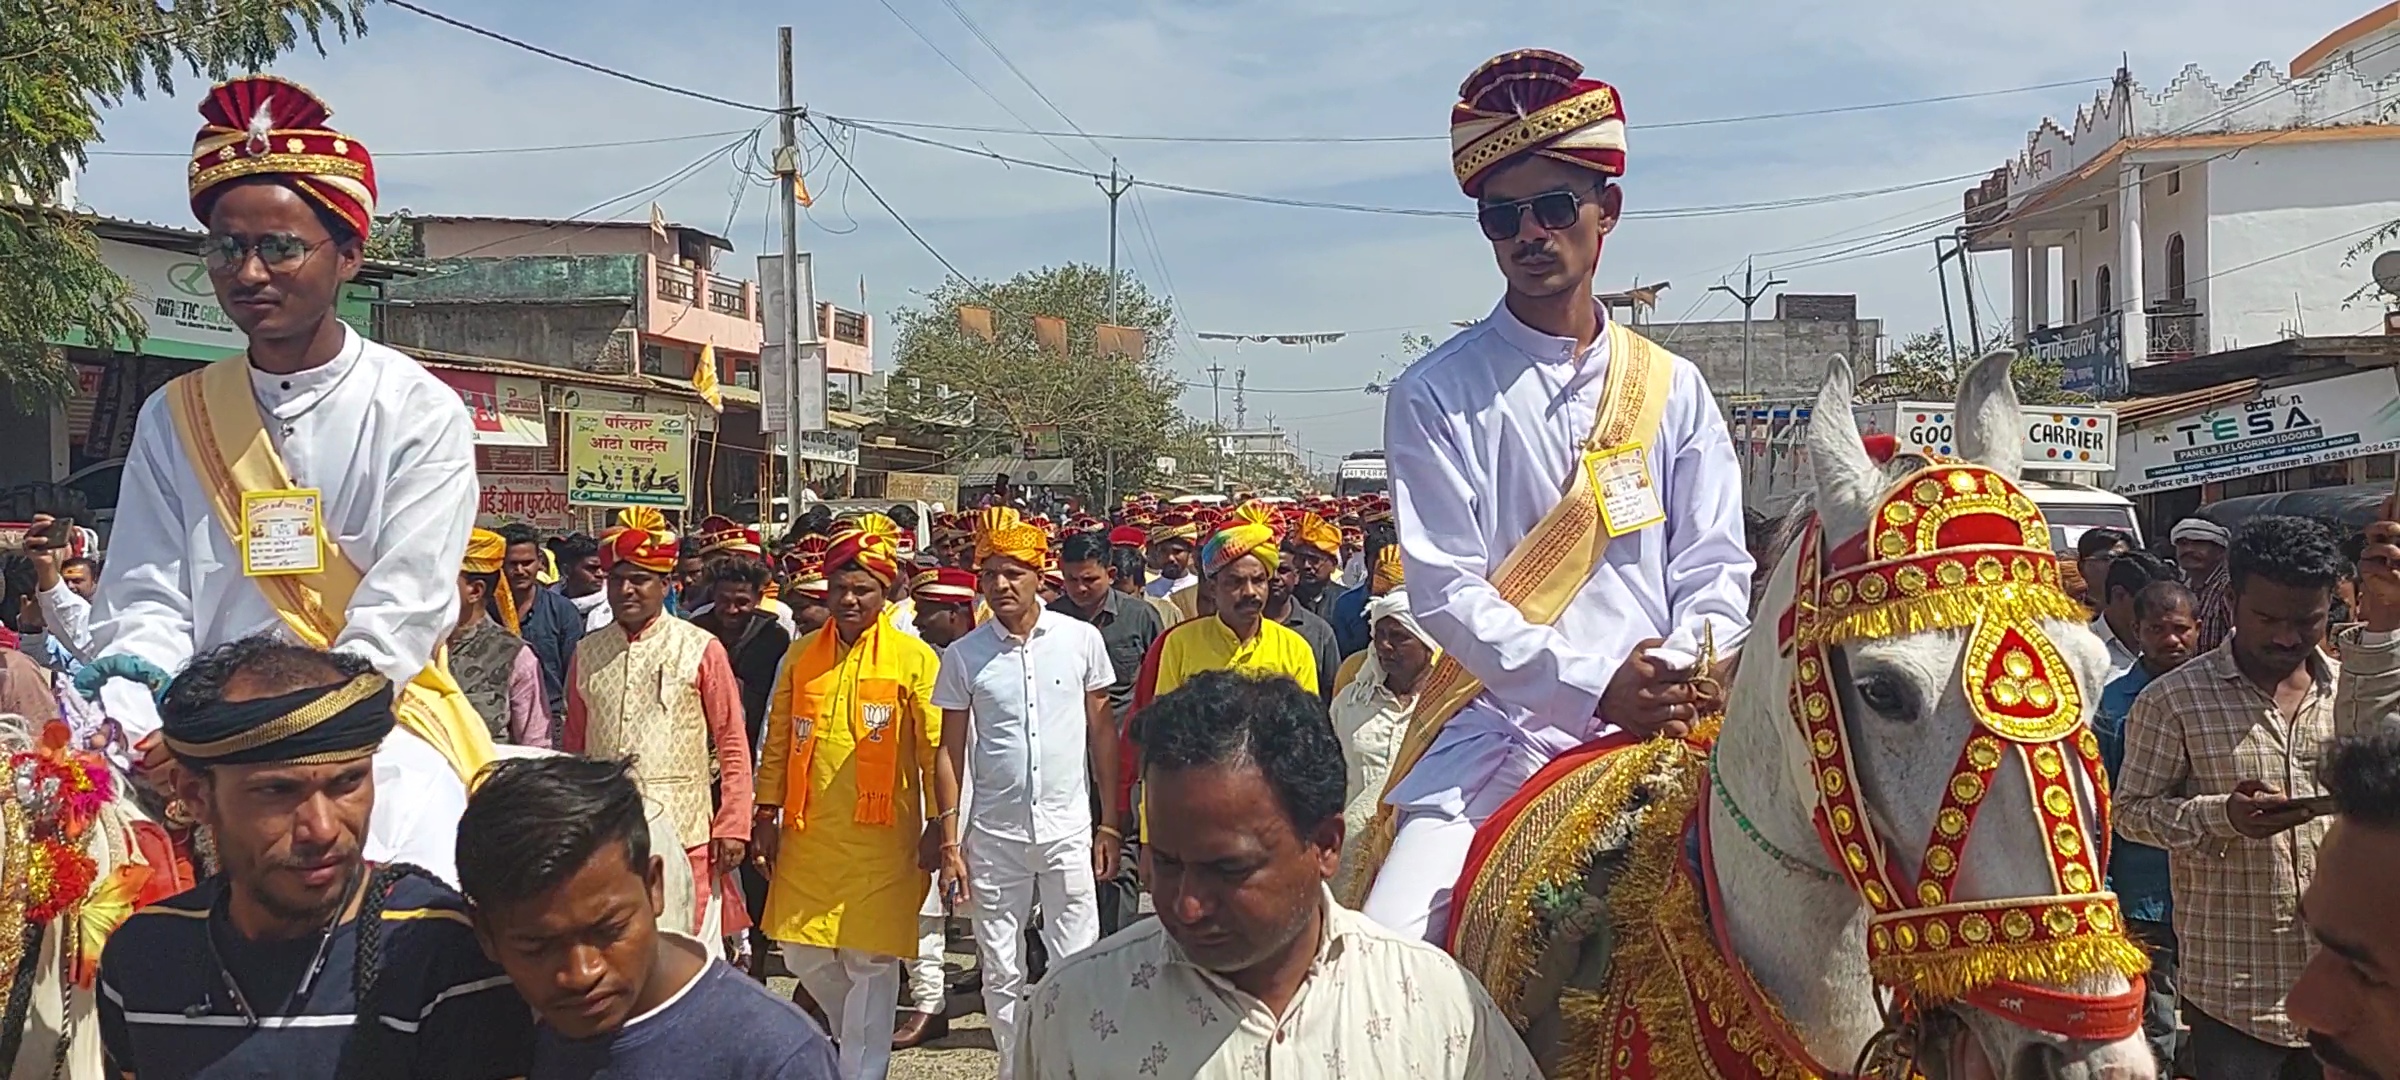 nikah program held at Paraswada in Balaghat